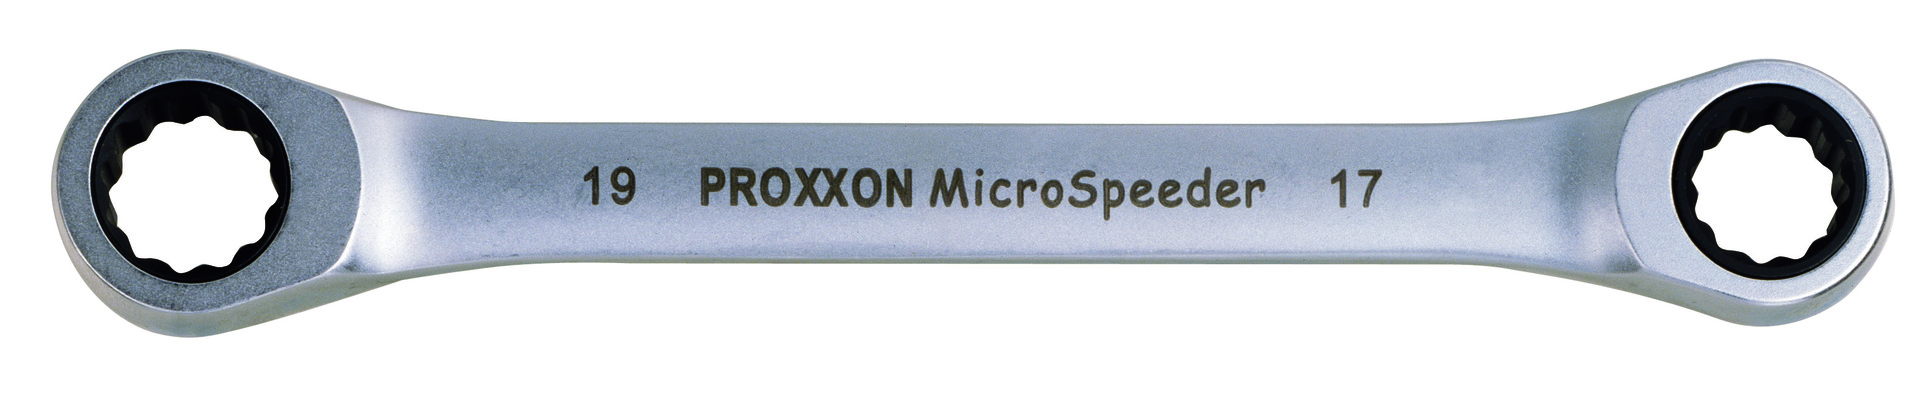 Proxxon MICRO-Speeder-Ratschenschlüssel